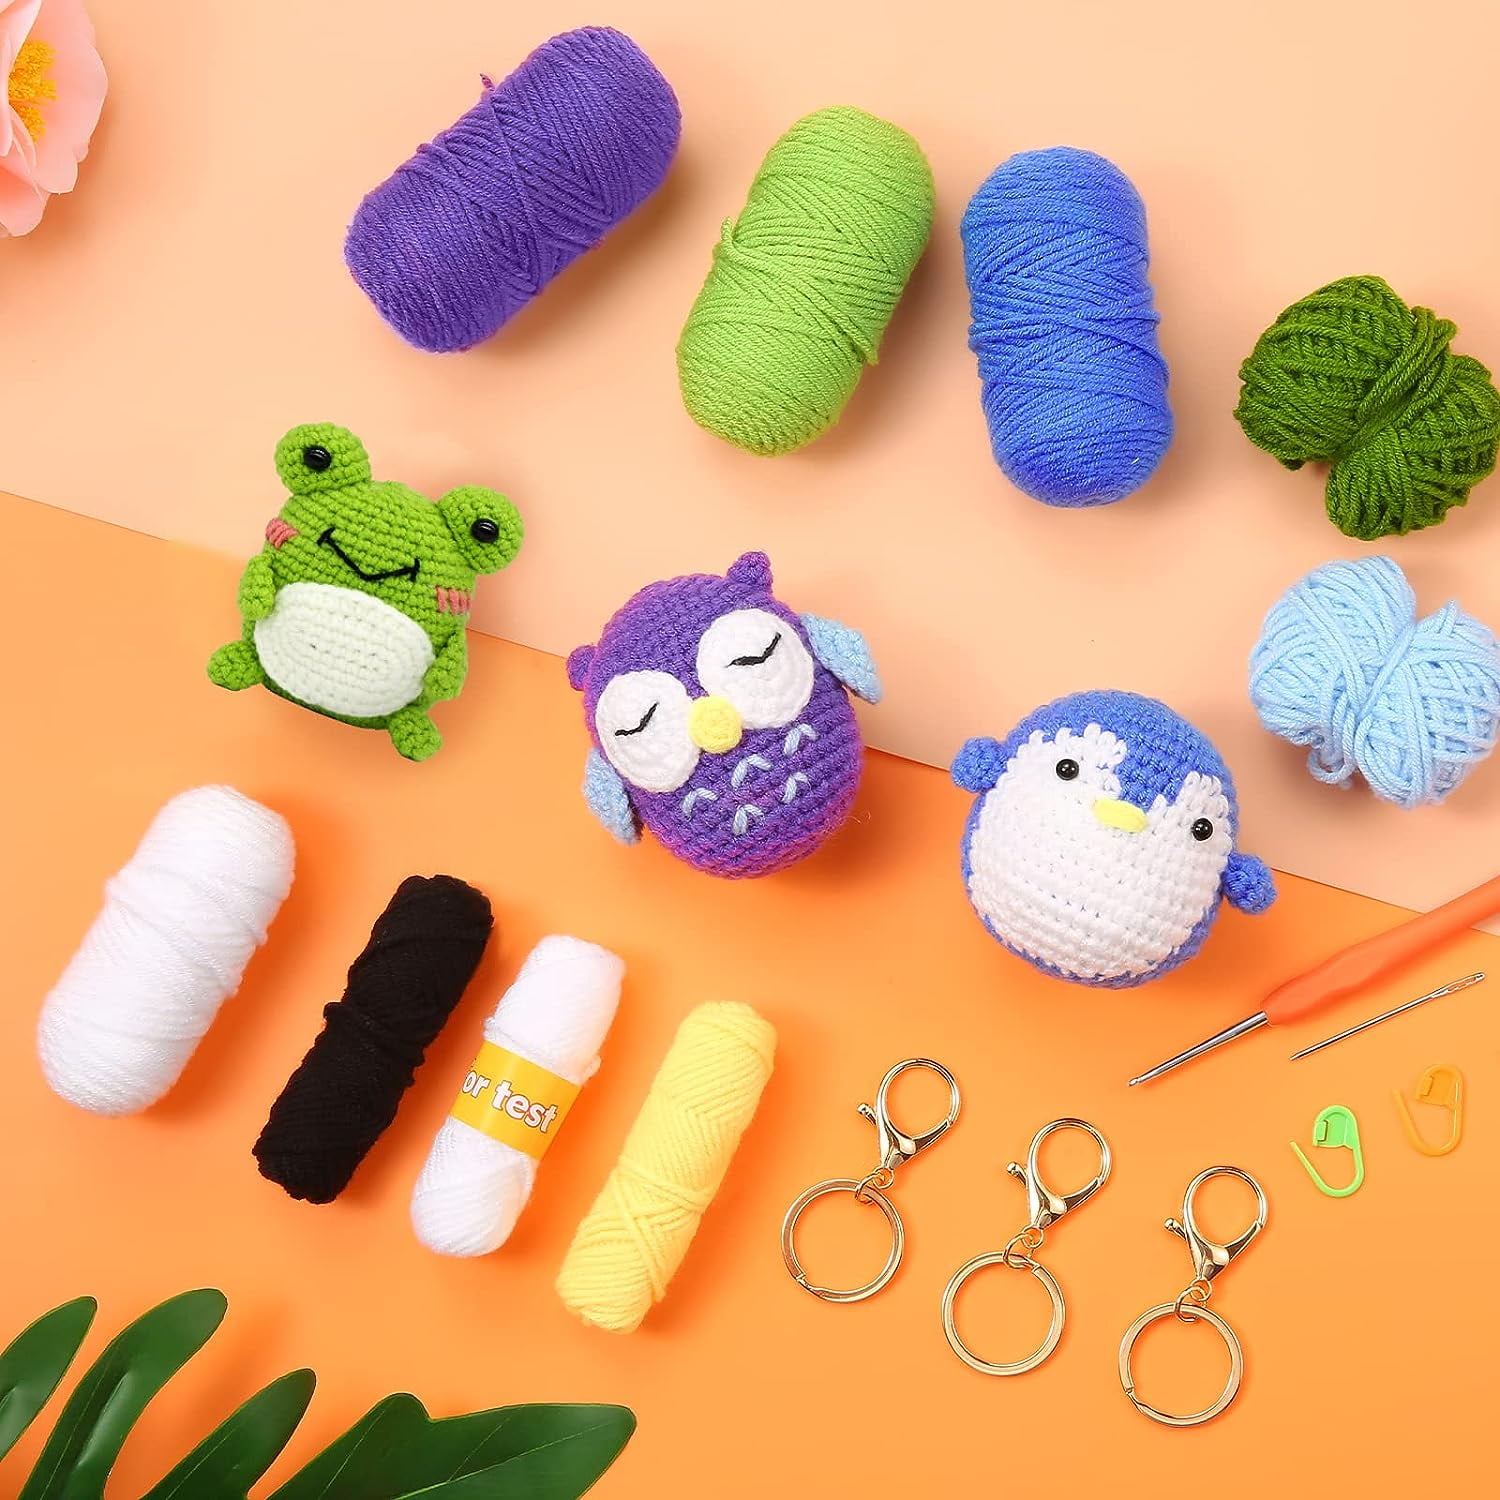 3 Pcs Complete Crochet Kit Beginner Frog Penguin Owl Crochet